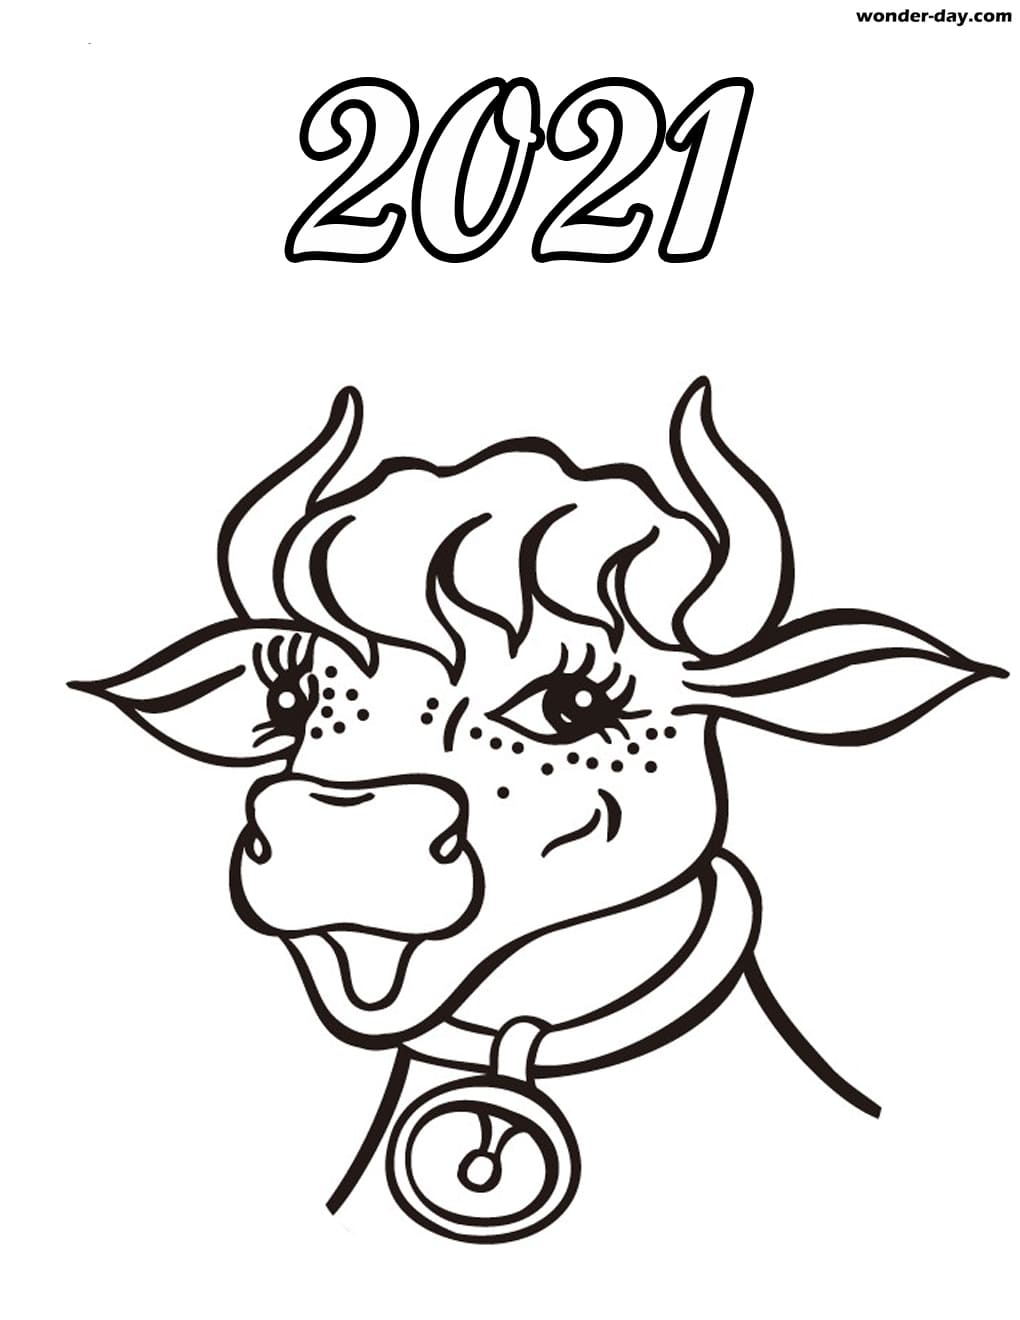 Ausmalbilder Neues Jahr 2021 - Frohes neues jahr 2021 ...